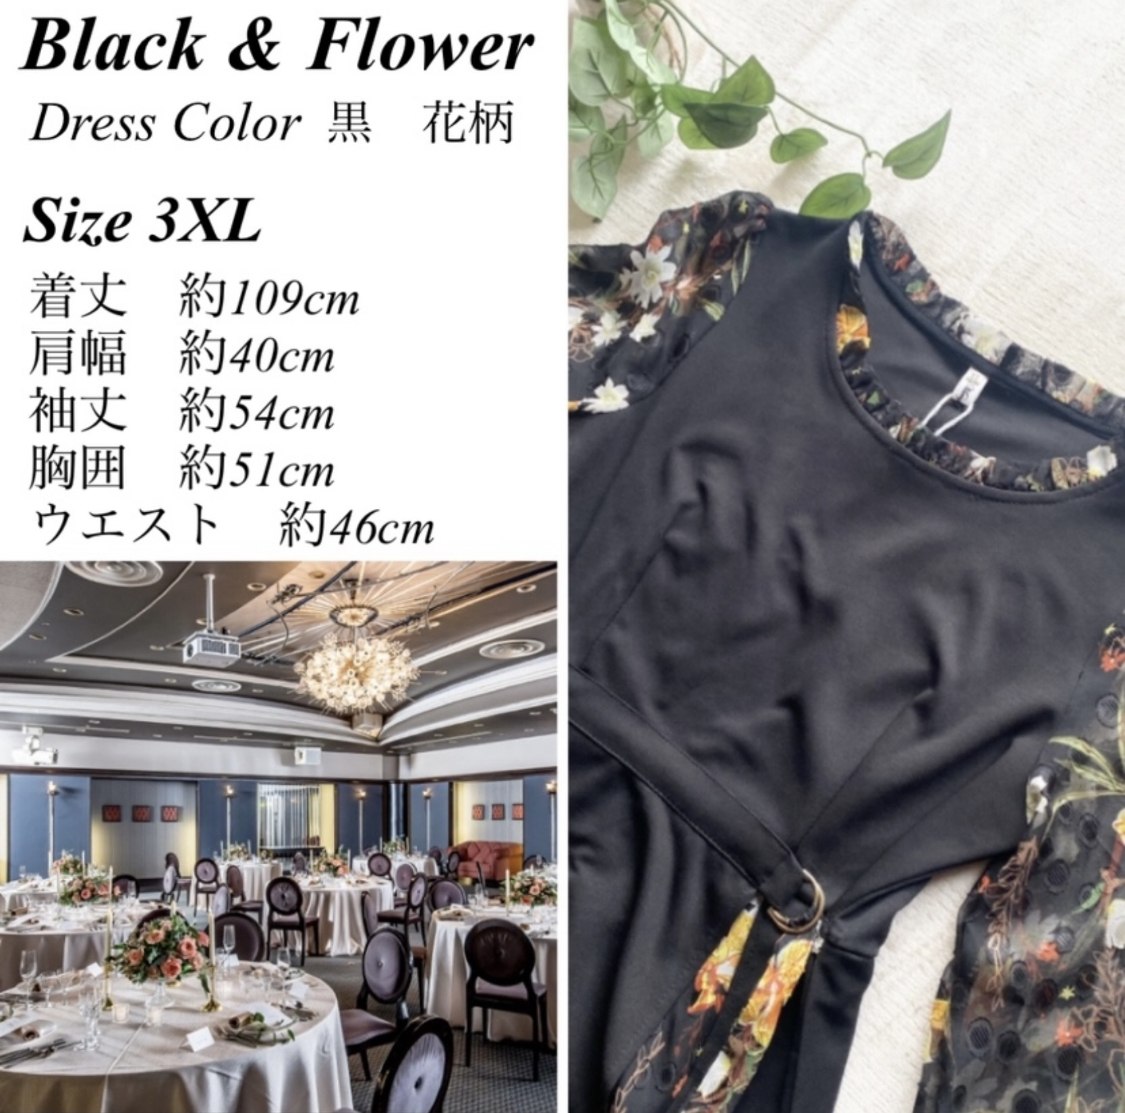 3XL 大きいサイズ ワンピース ドレス 異素材ワンピース 花柄 結婚式 シック ロングワンピース パーティードレス 春夏 韓国